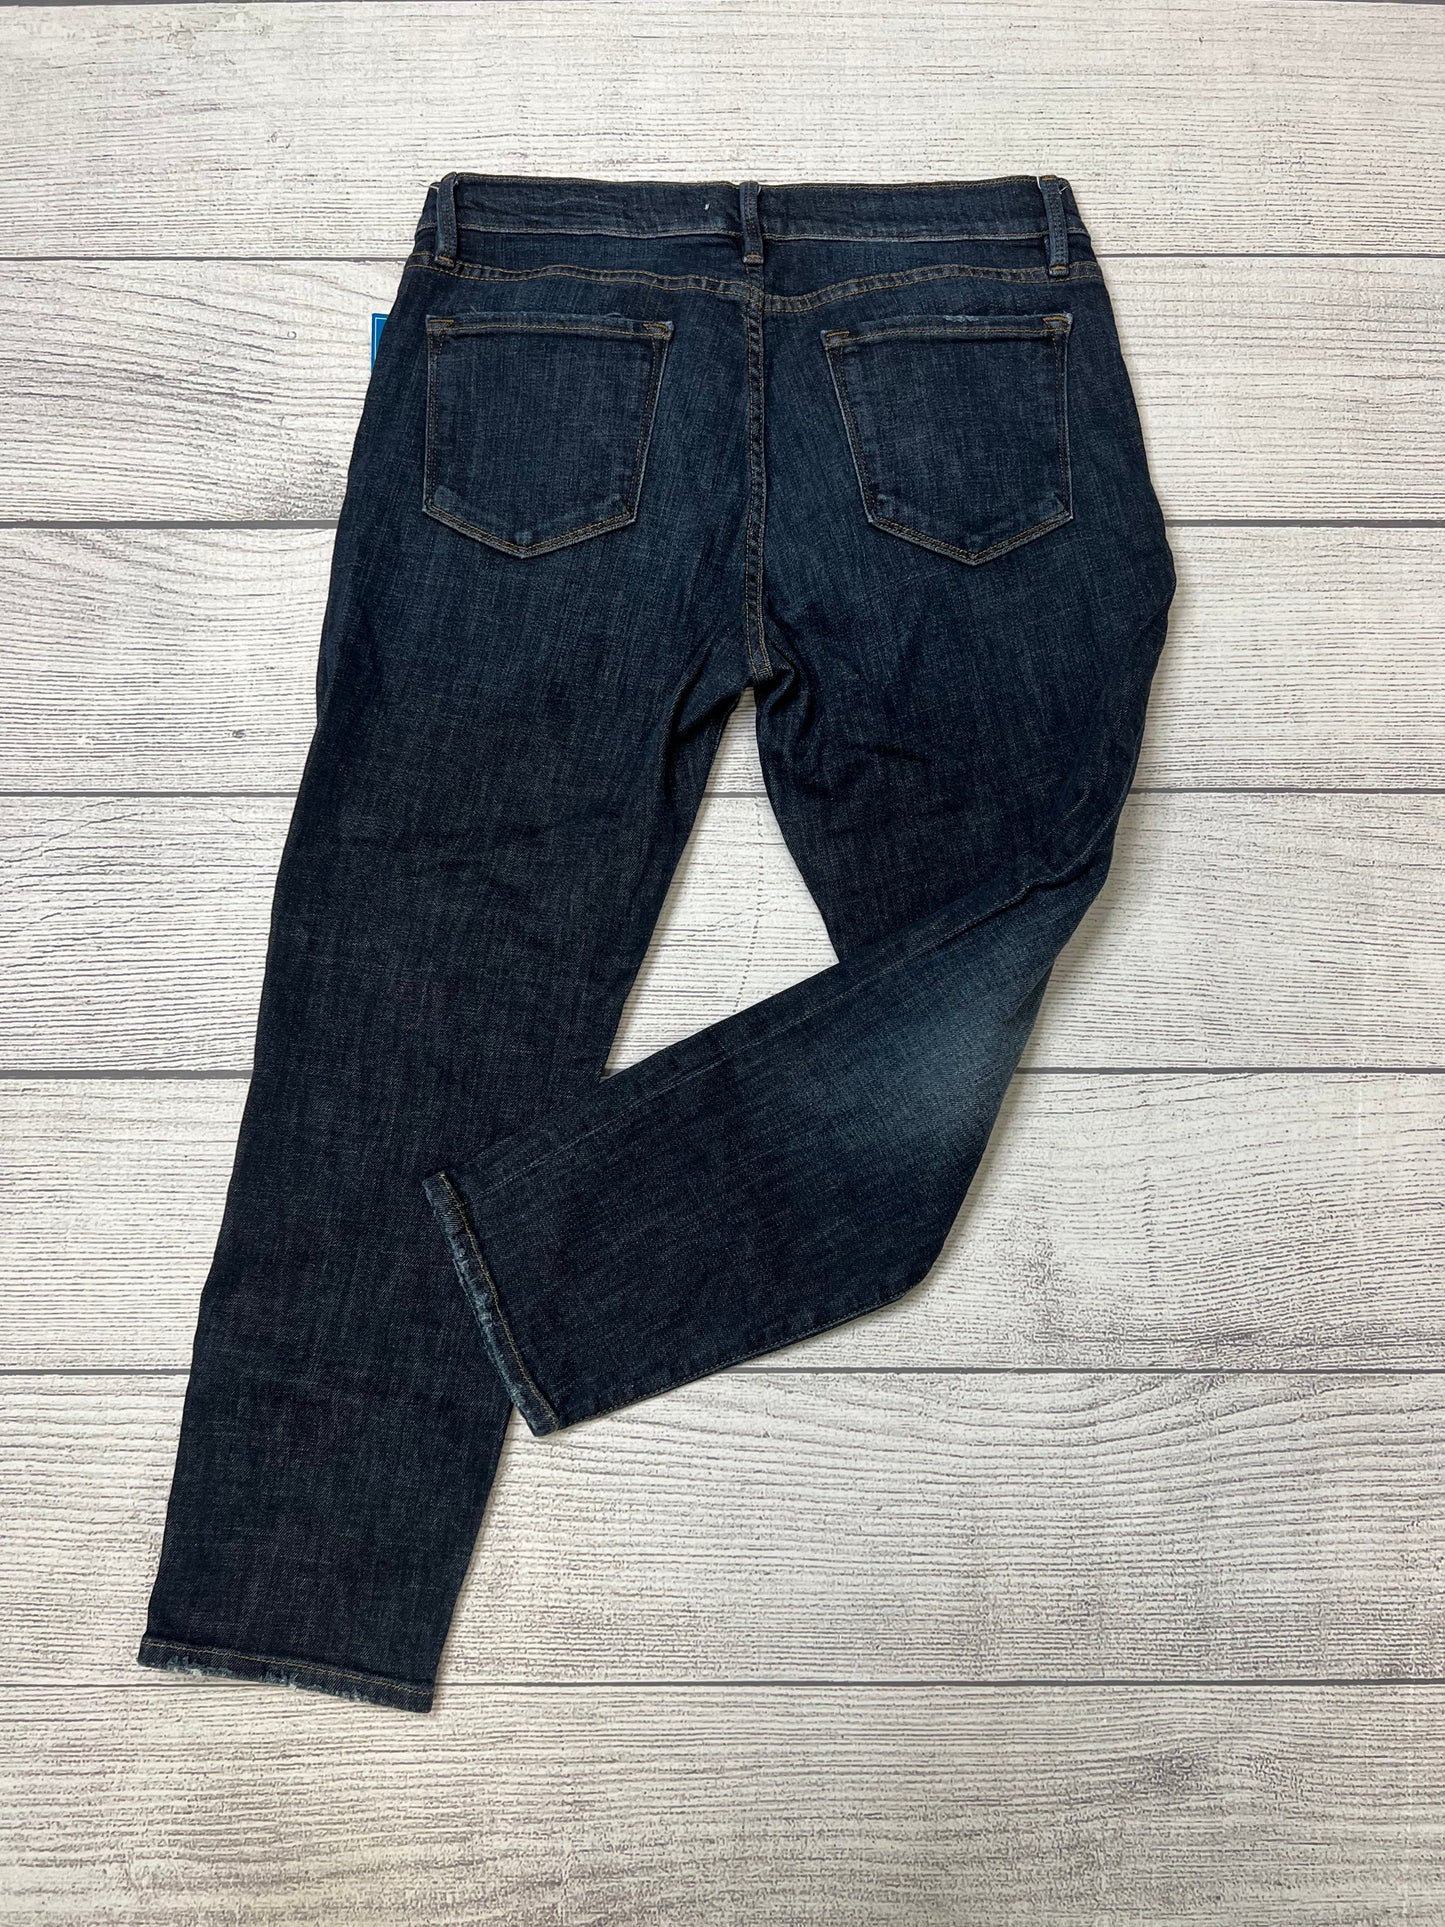 Jeans Designer By Frame  Size: 8